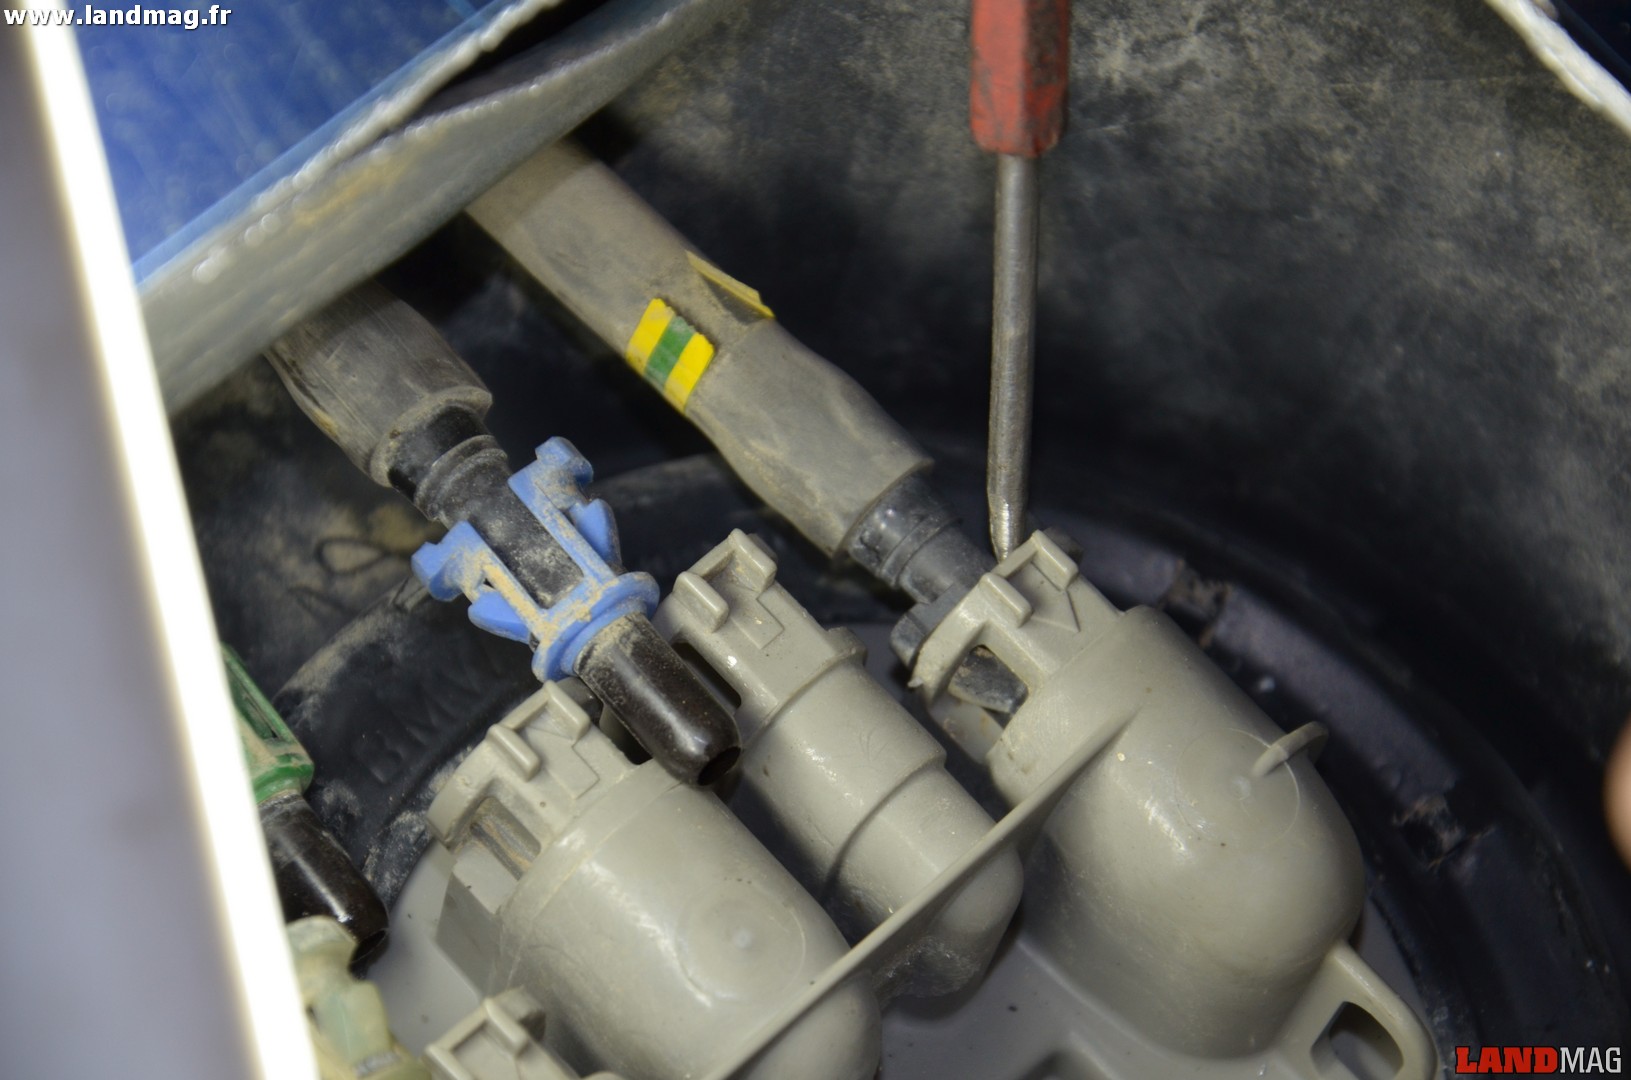 15- Avec une pointe, désengager délicatement les 2 pattes en plastique qui maintiennent les tuyaux de carburant en poussant sur leur base et retirer les tuyaux.